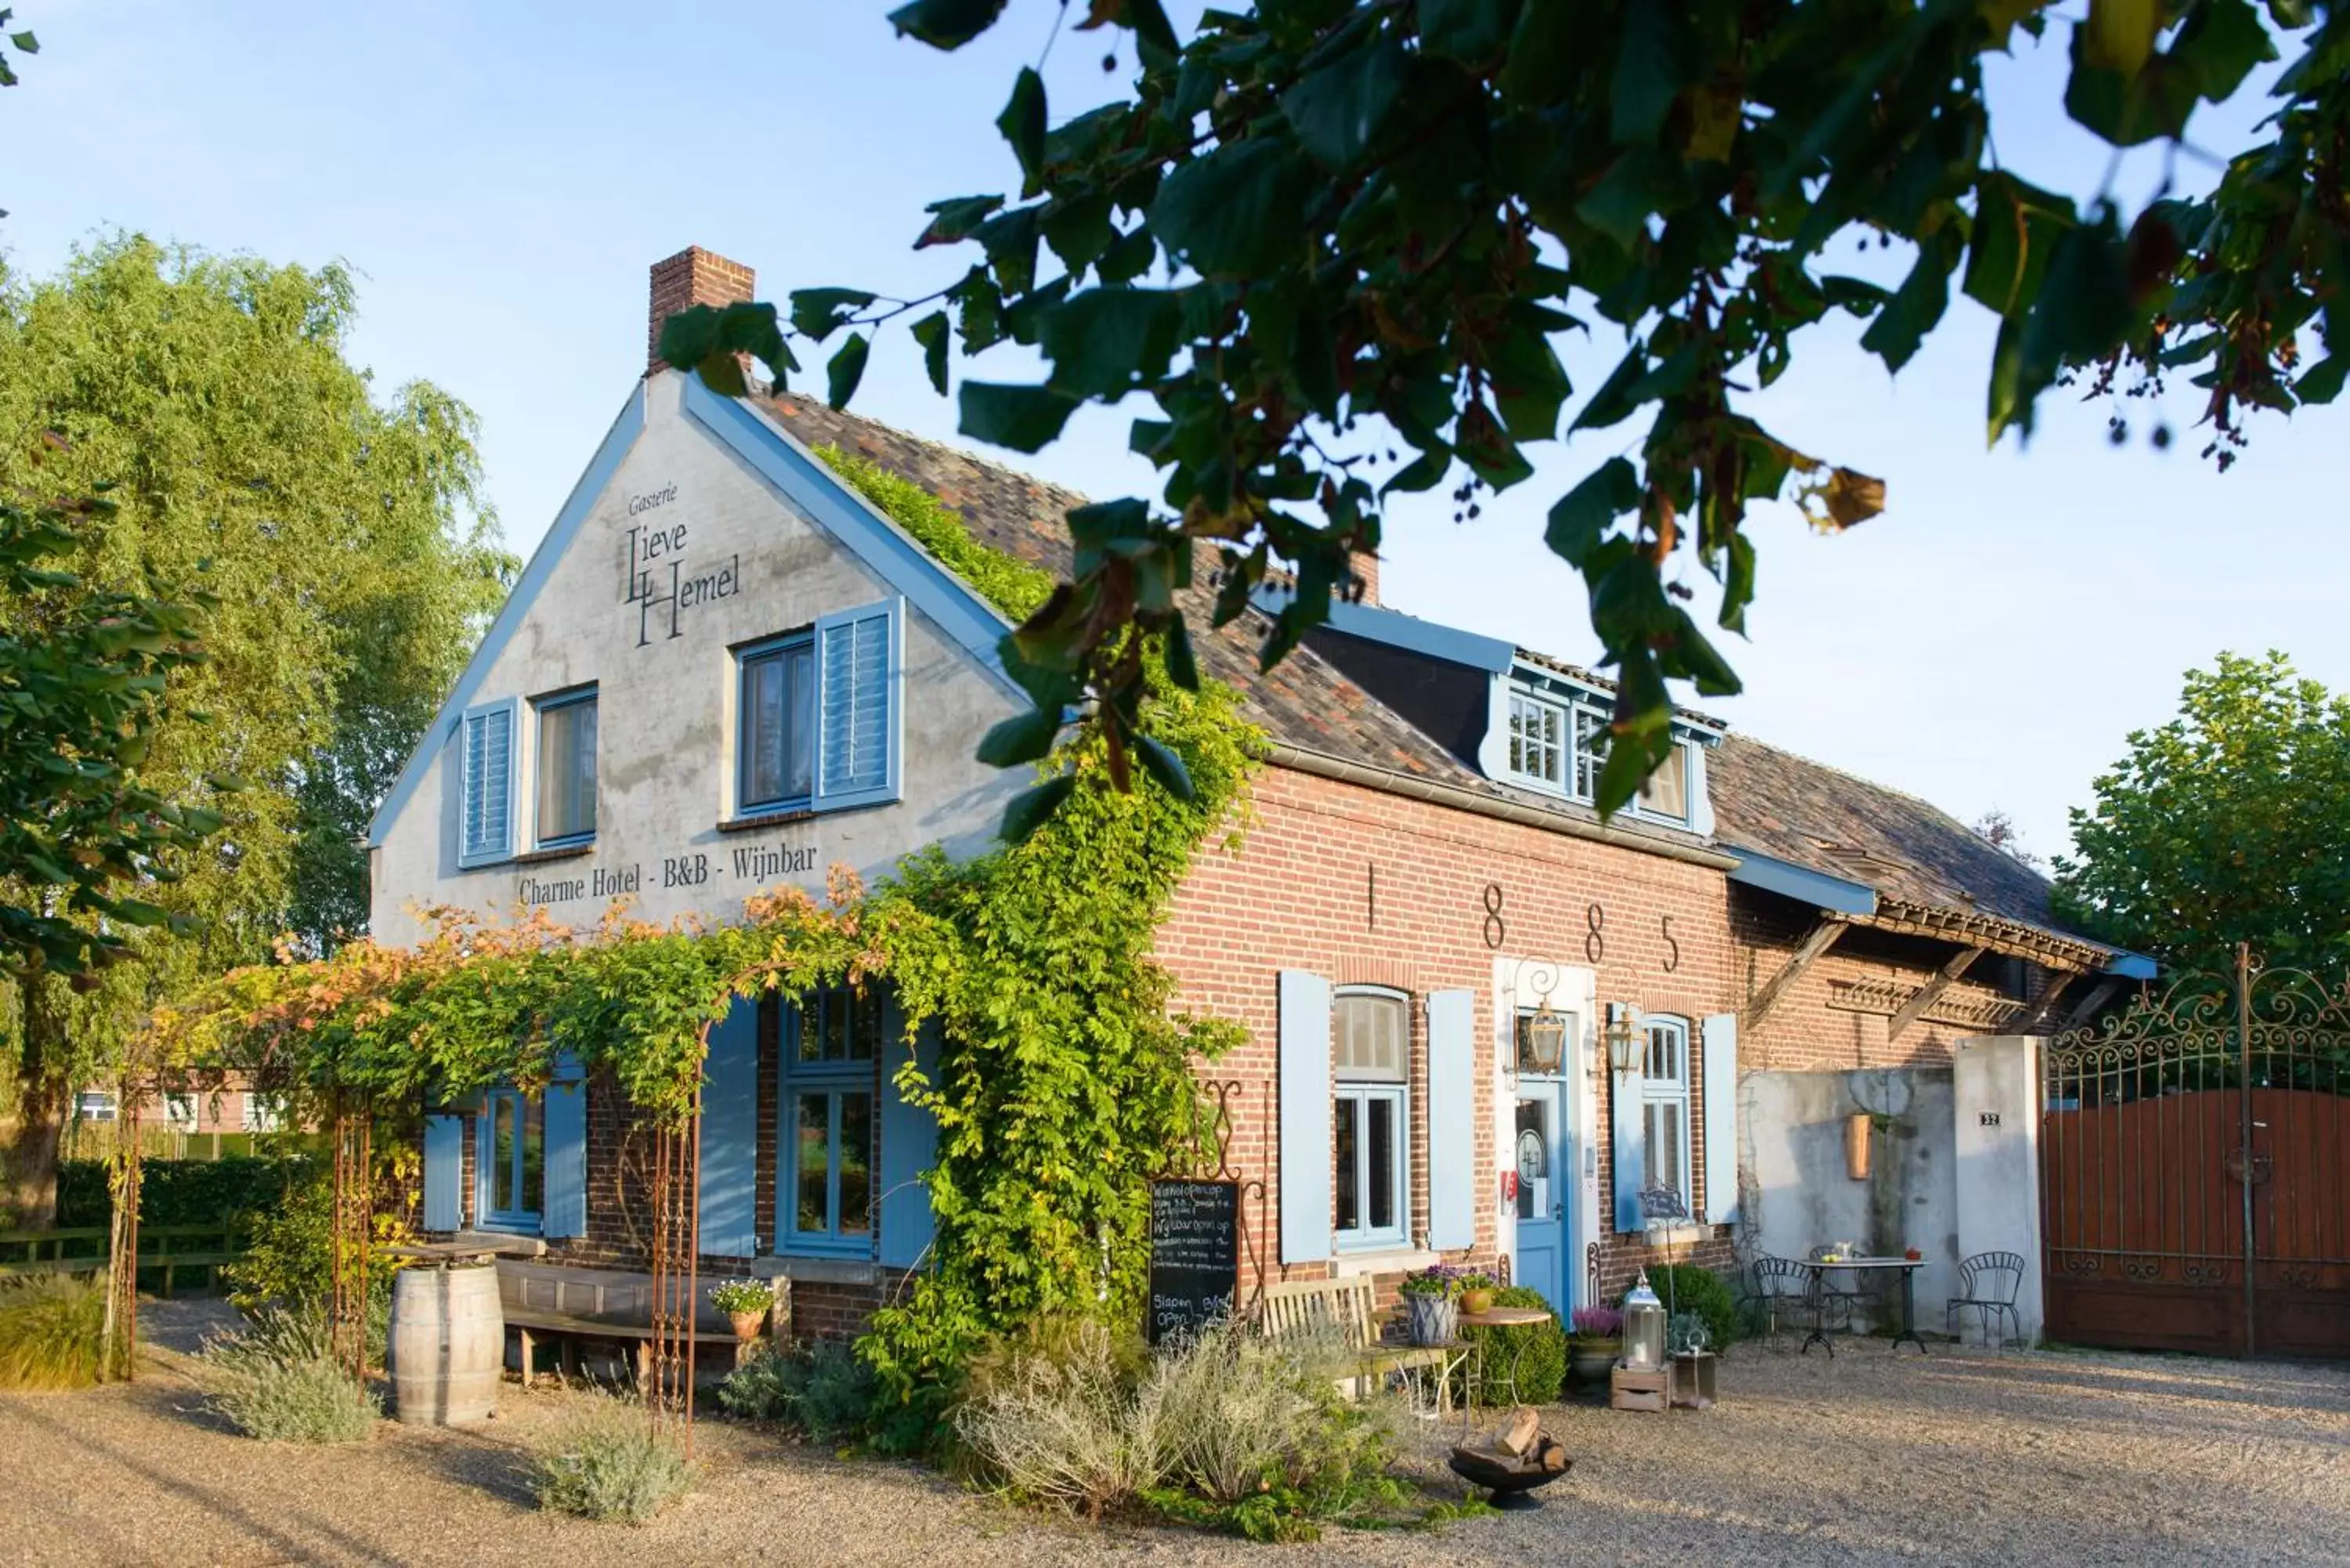 Property Building in Gasterie Lieve Hemel